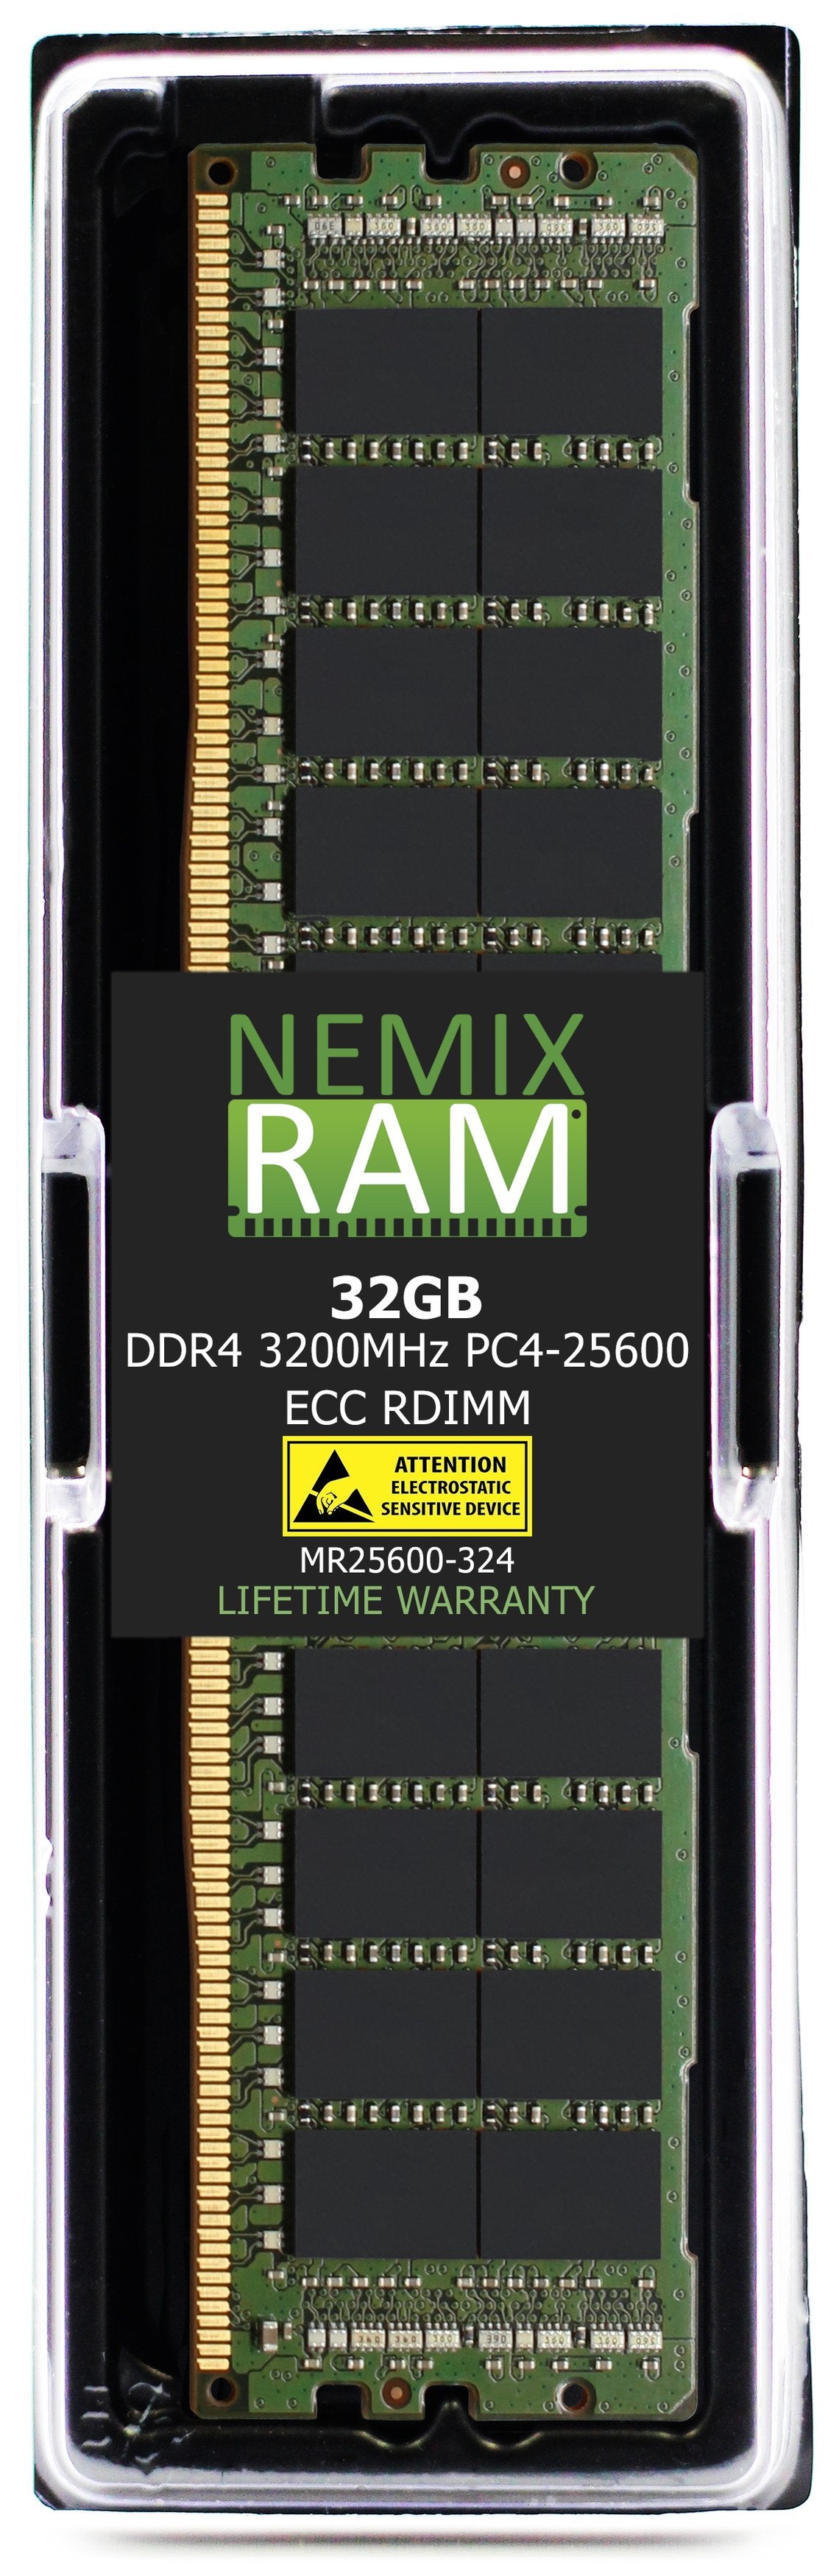 32GB DDR4 3200MHZ PC4-25600 RDIMM Compatible with Supermicro MEM-DR432L-CL01-ER32